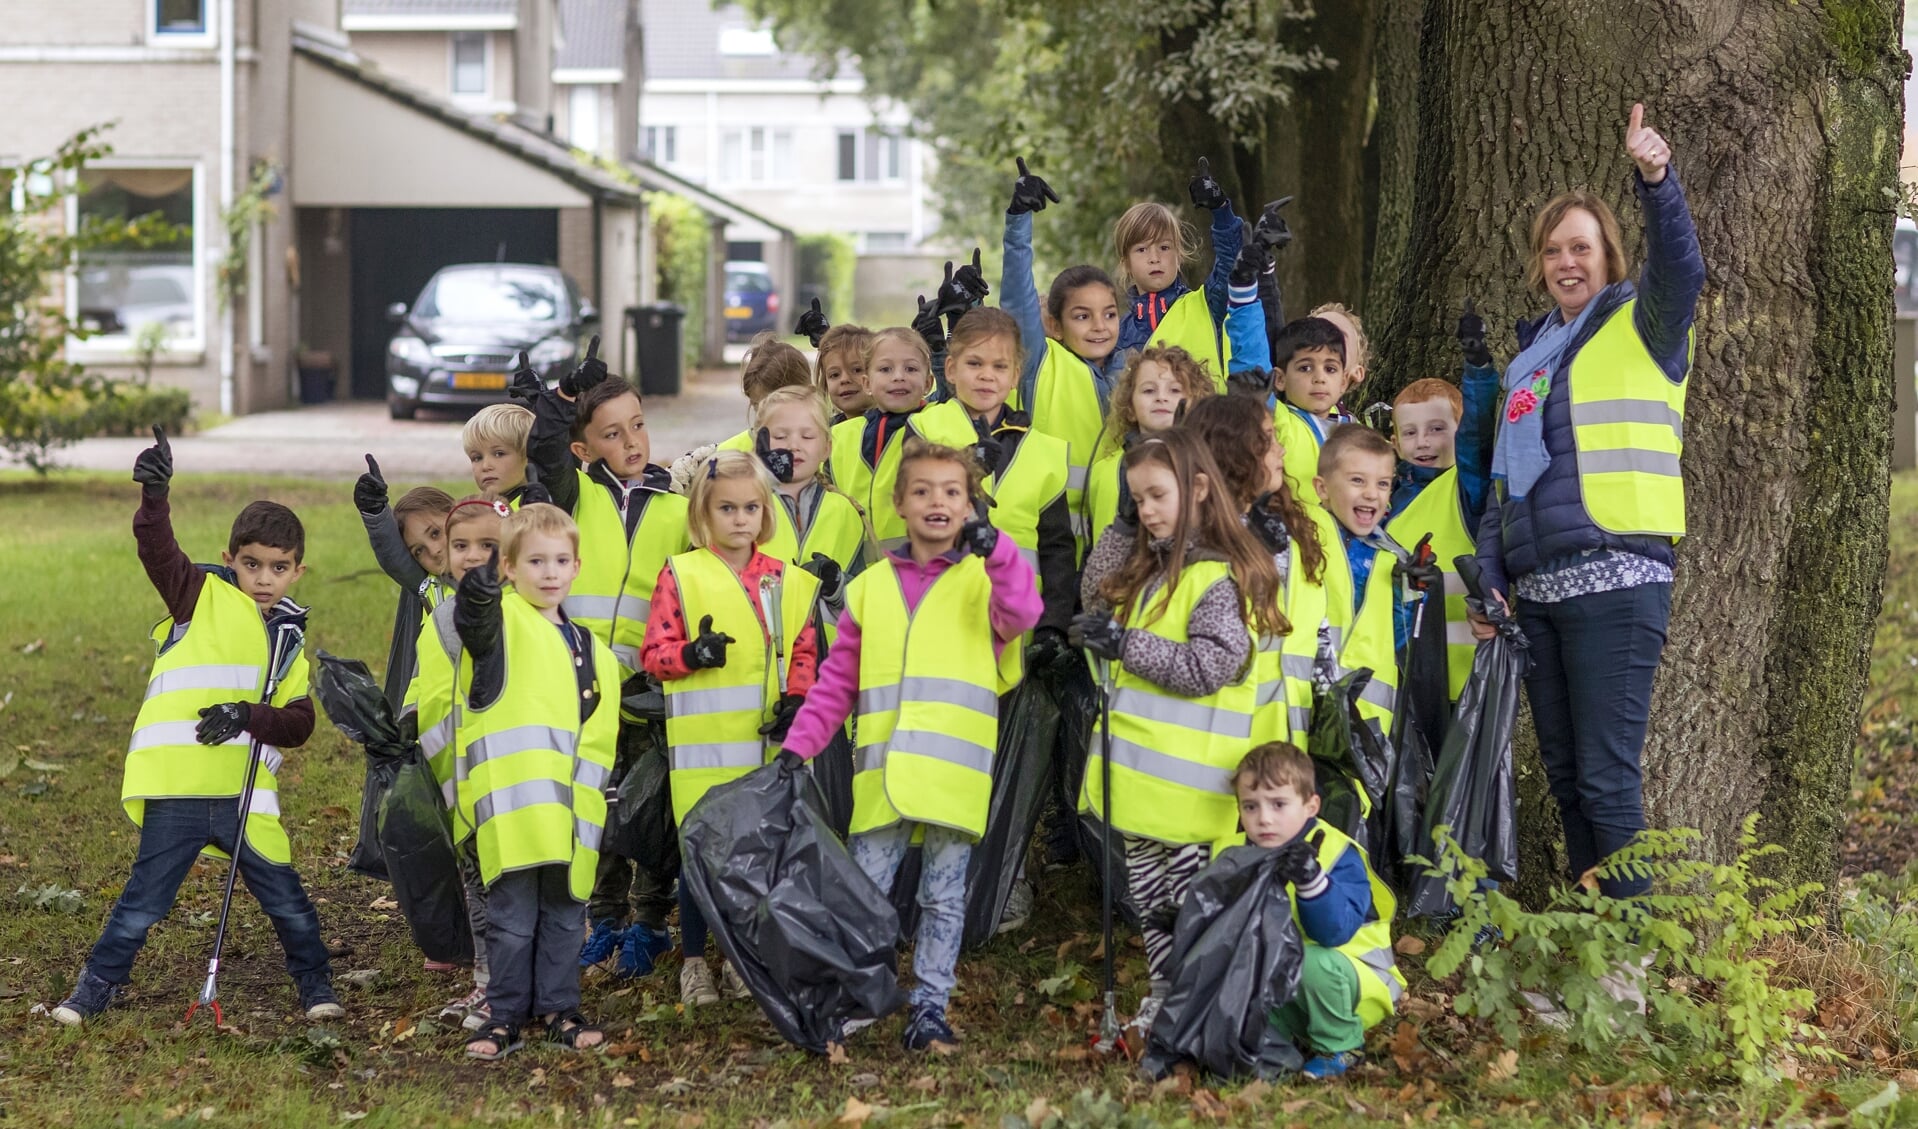 Enthousiaste schoolkinderen tijdens de Keep it Clean Day Venray 2017. Ook 21 september gaan ze weer met honderden tegelijk de straat op om zwerfvuil op te rapen.